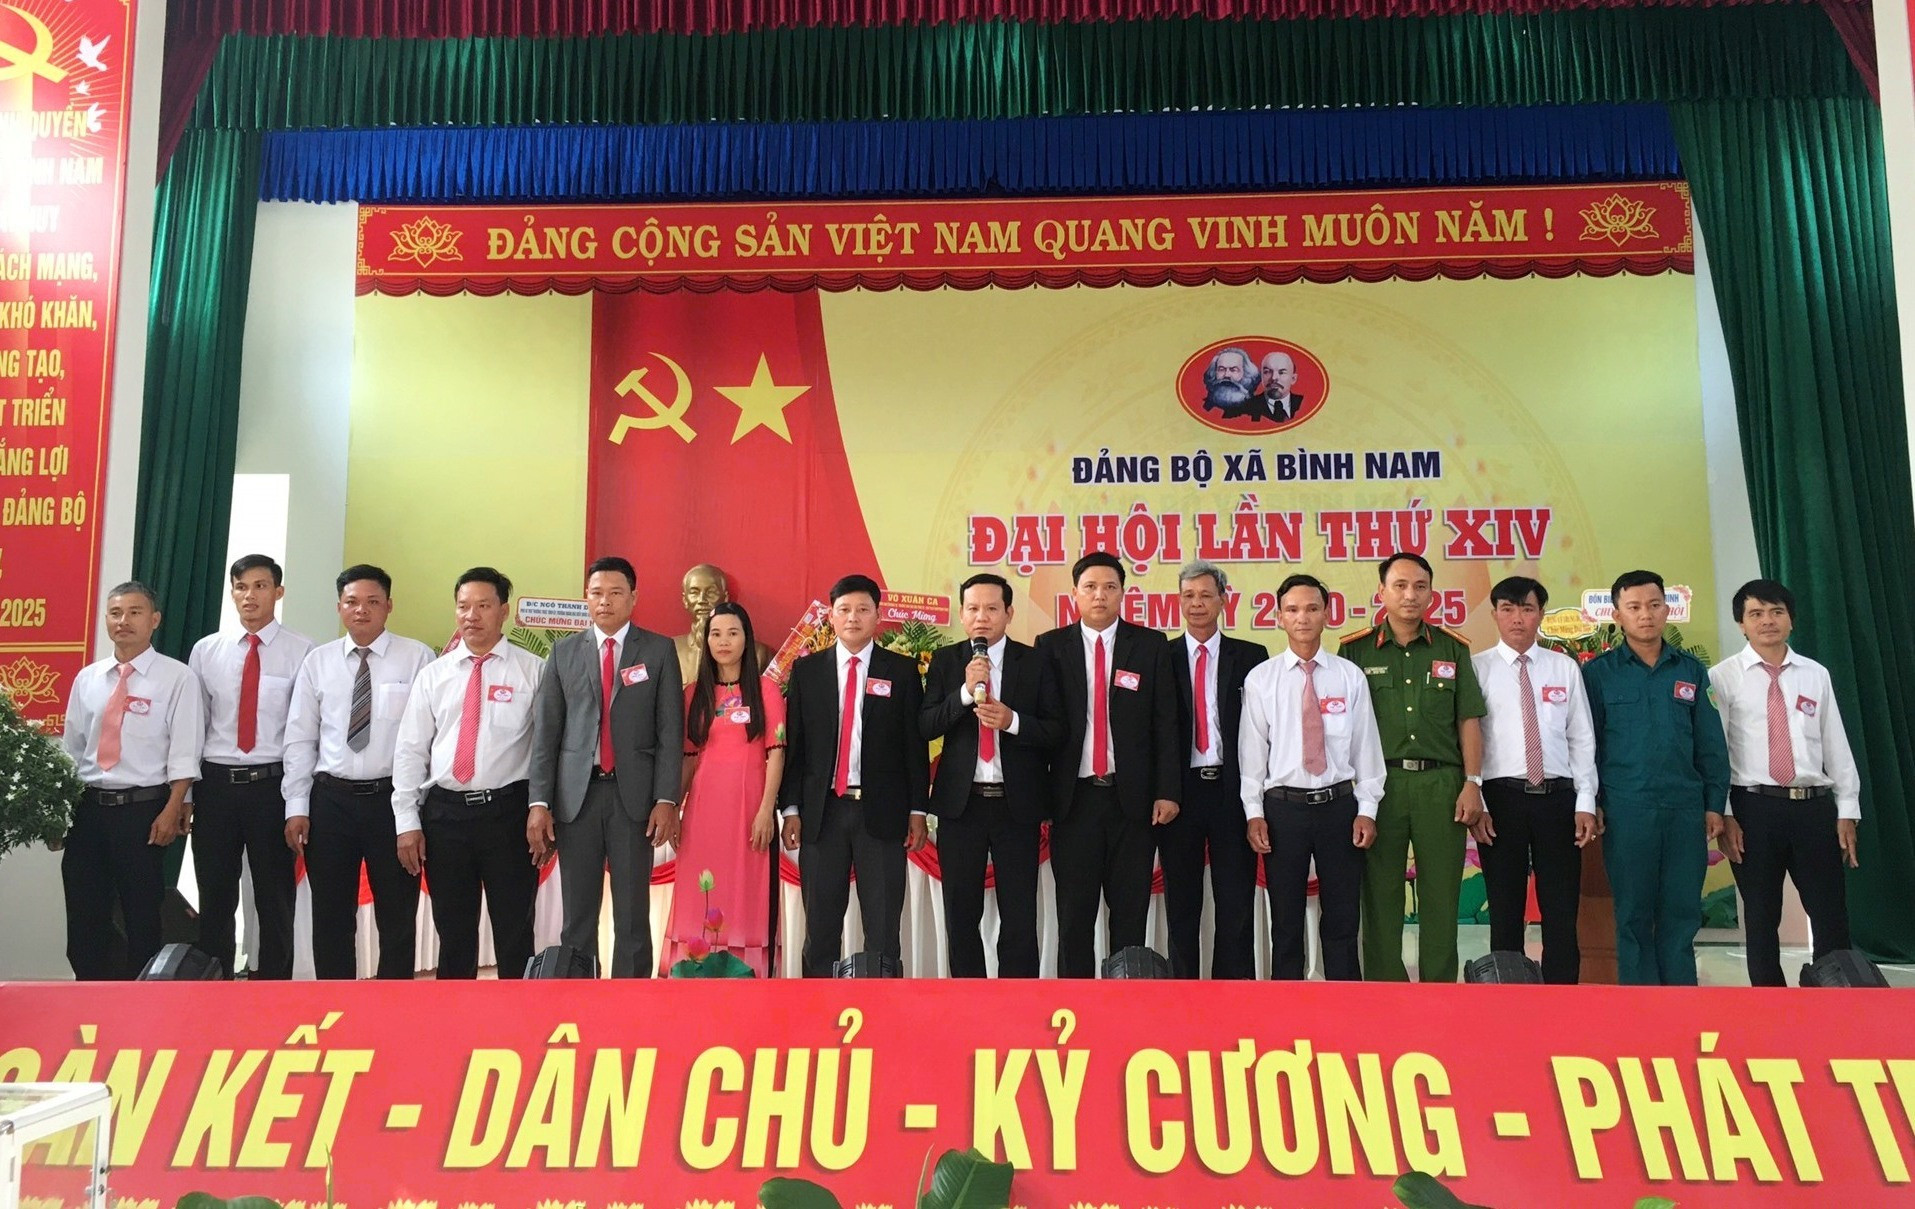 Ban chấp hành Đảng bộ xã Bình Nam khóa XIV gồm 15 đồng chí ra mắt đại hội. Ảnh: PHAN VINH